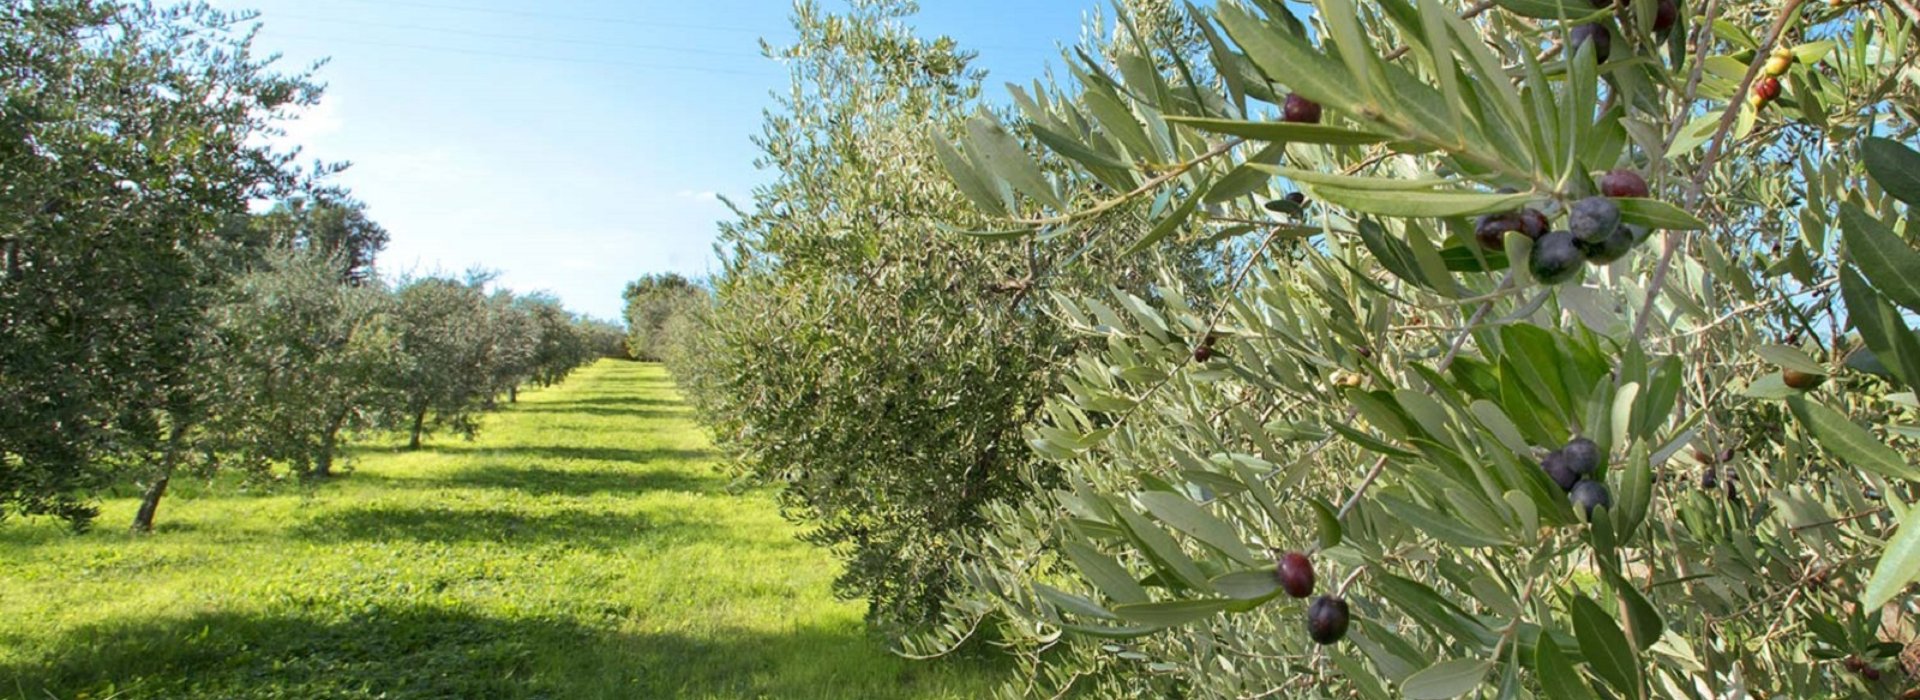 Weekend in Costa degli Etruschi alla scoperta dell'olio d'oliva Toscano